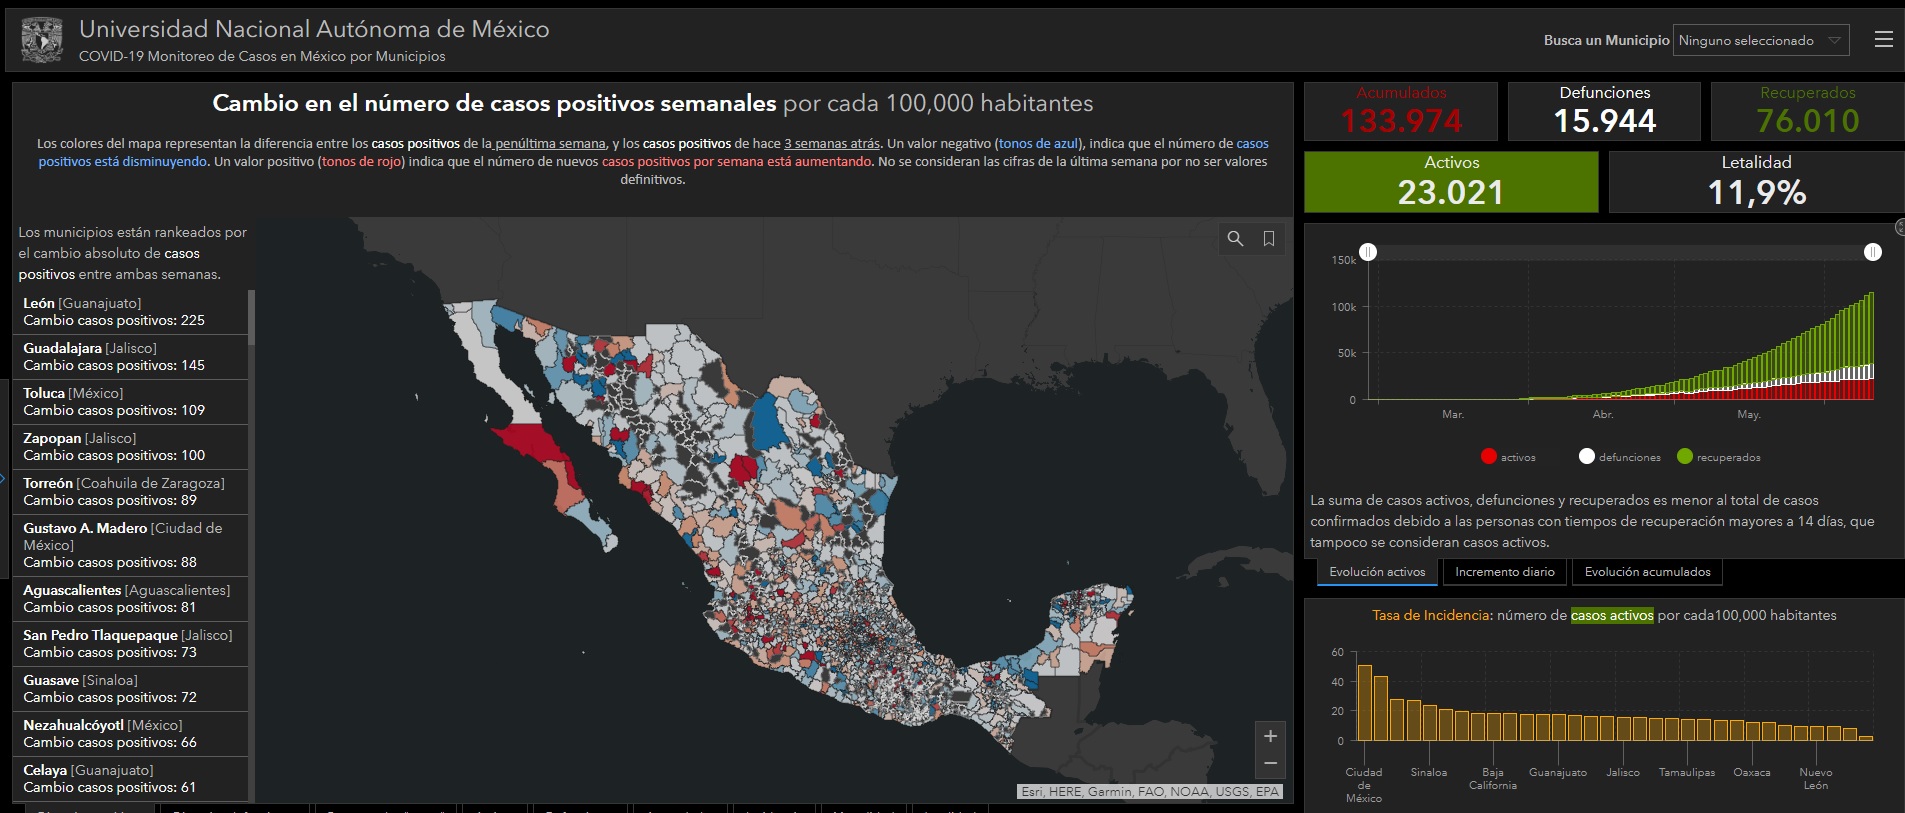 Iztapalapa y Tijuana son los municipios con más muertes por COVID19